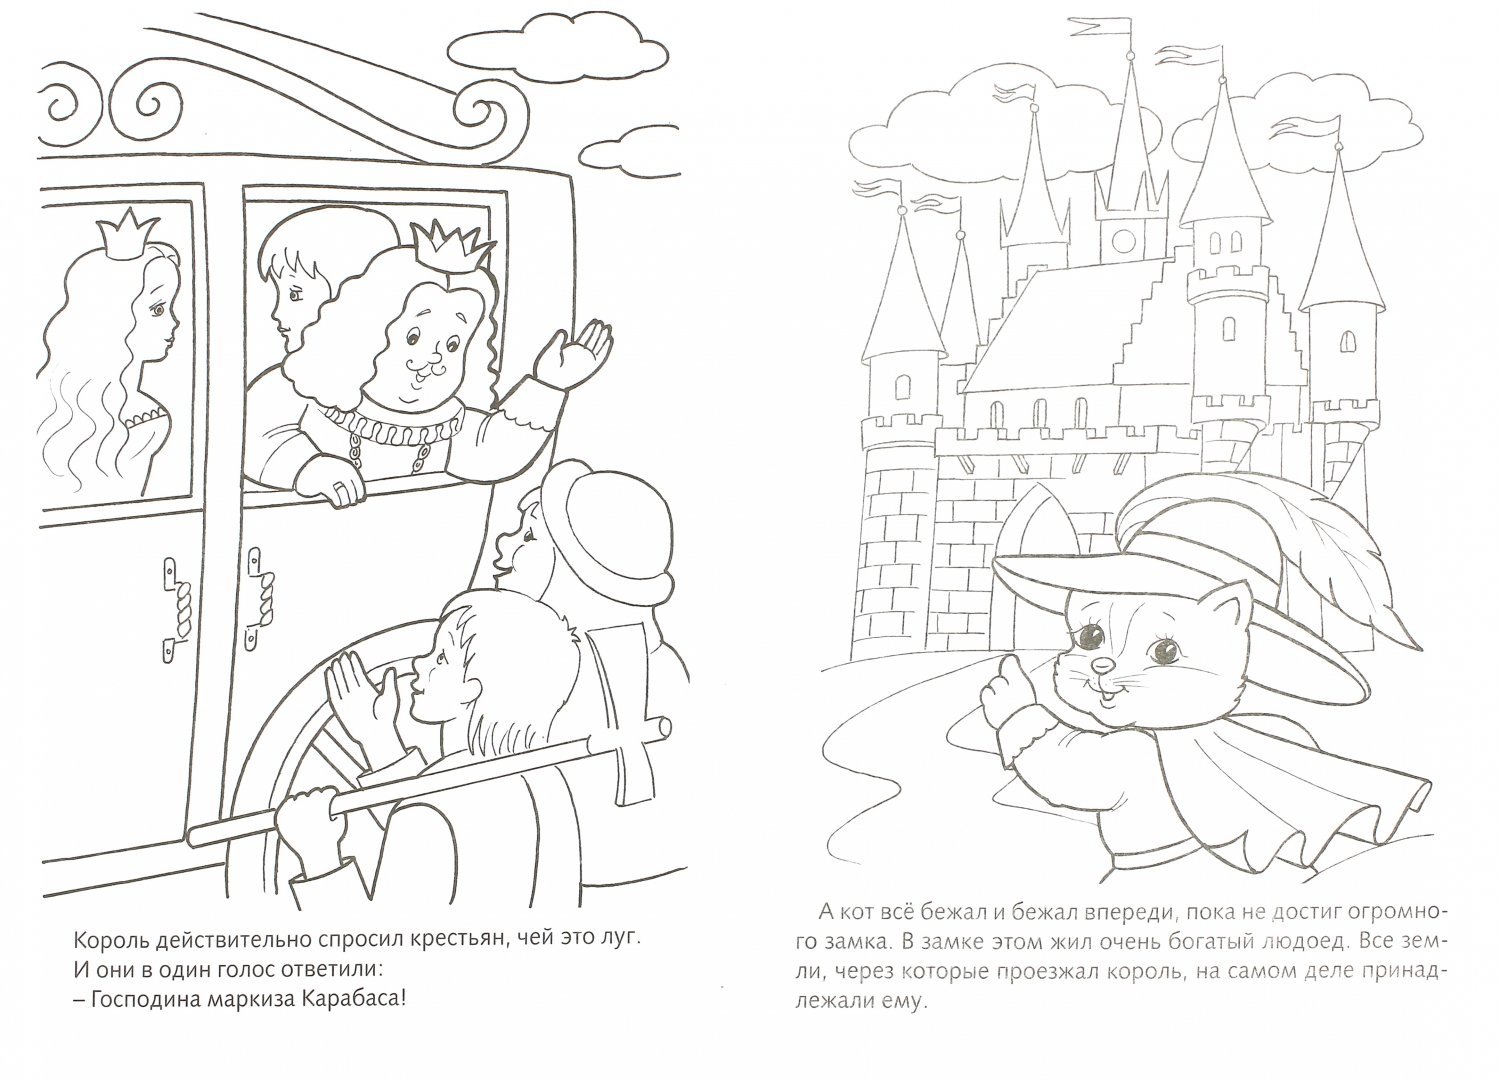 Раскраска Кот в сапогах - распечатать в формате А4 | Раскраски, Рисунки, Детские раскраски